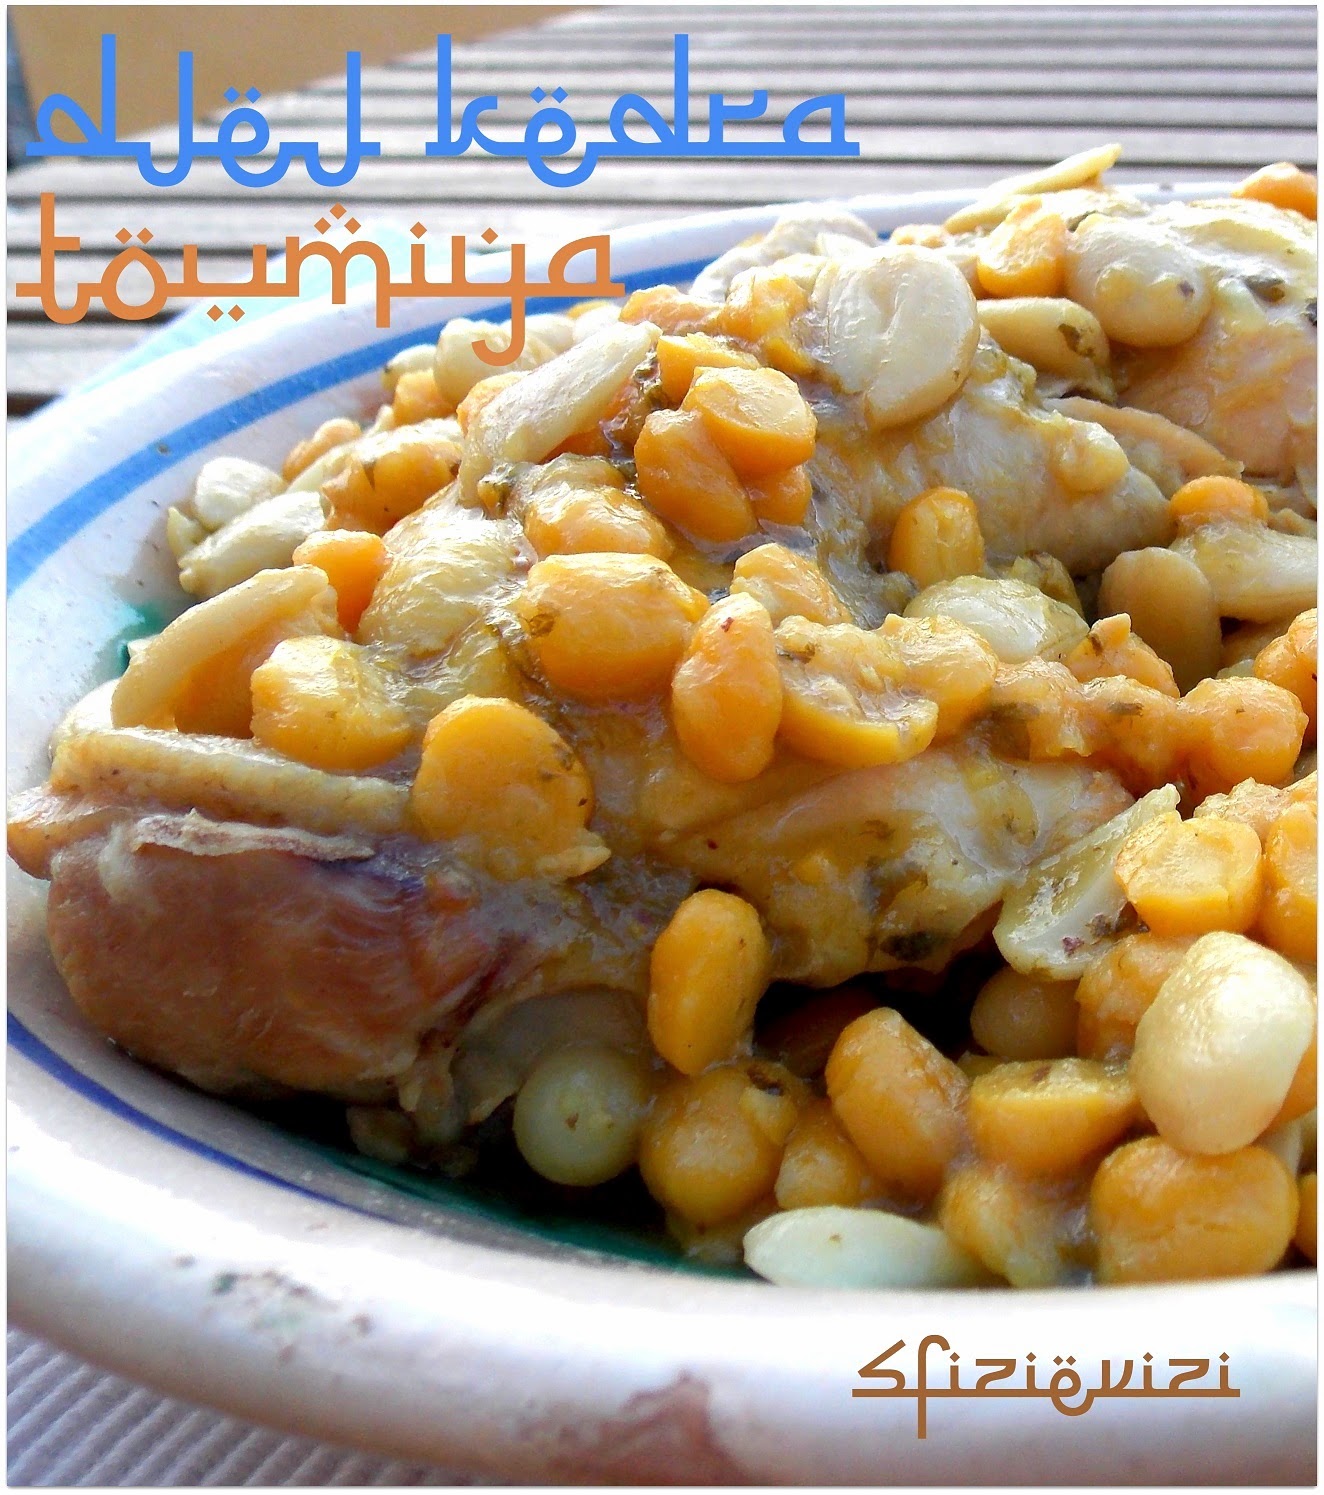 djej kedra toumiya ovvero pollo kedra con mandorle e ceci, ricetta tradizionale marocchina per 